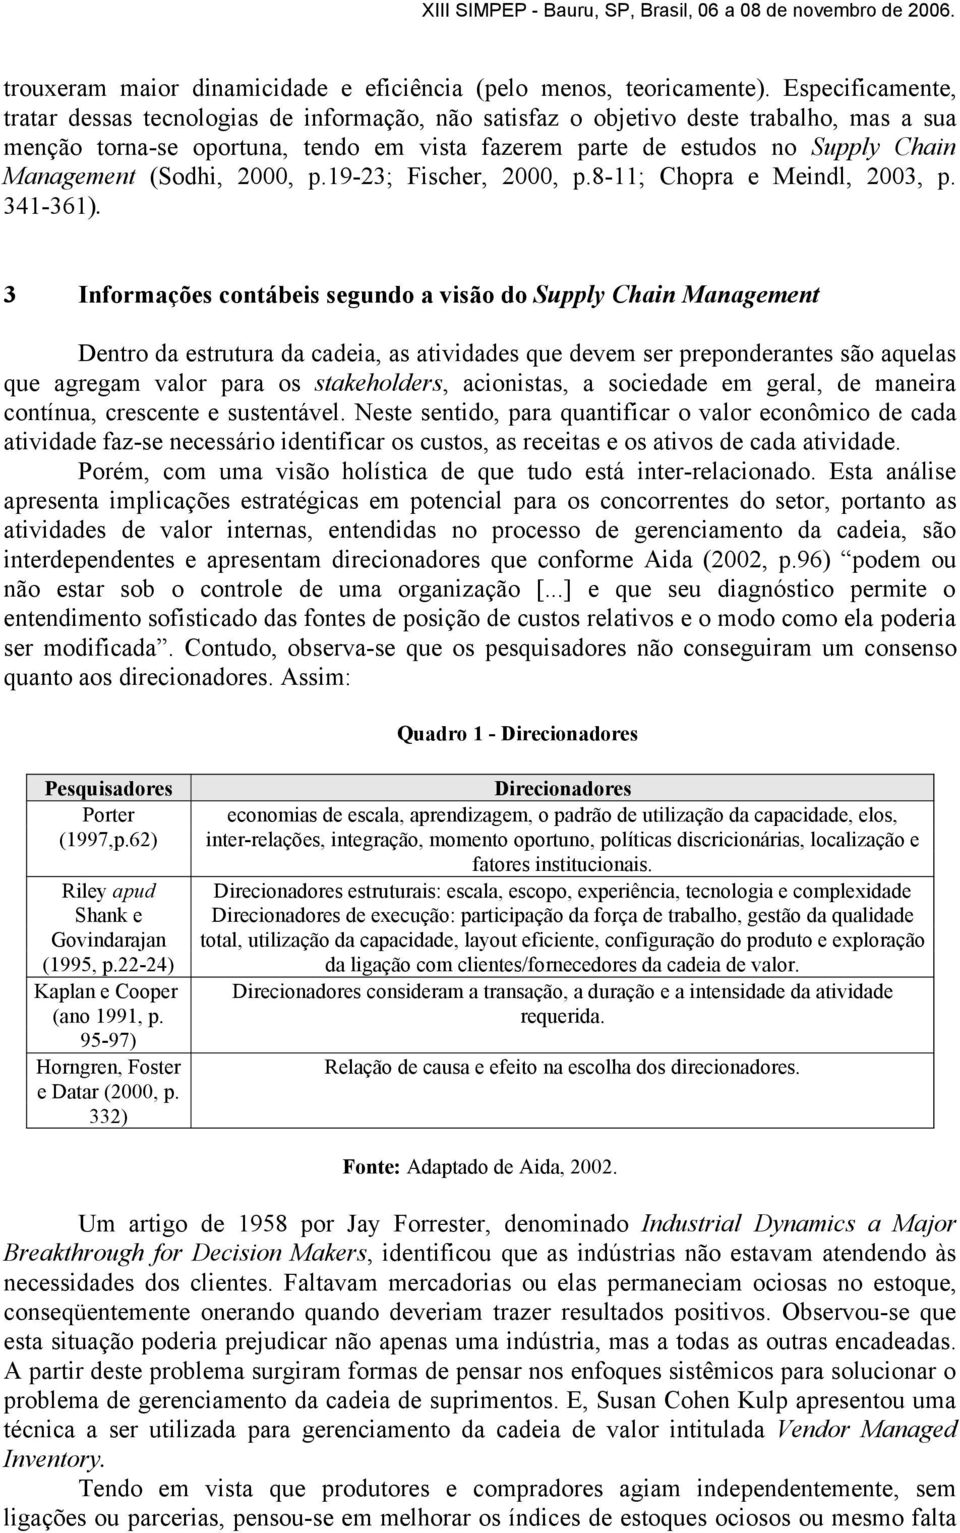 Management (Sodhi, 2000, p.19-23; Fischer, 2000, p.8-11; Chopra e Meindl, 2003, p. 341-361).